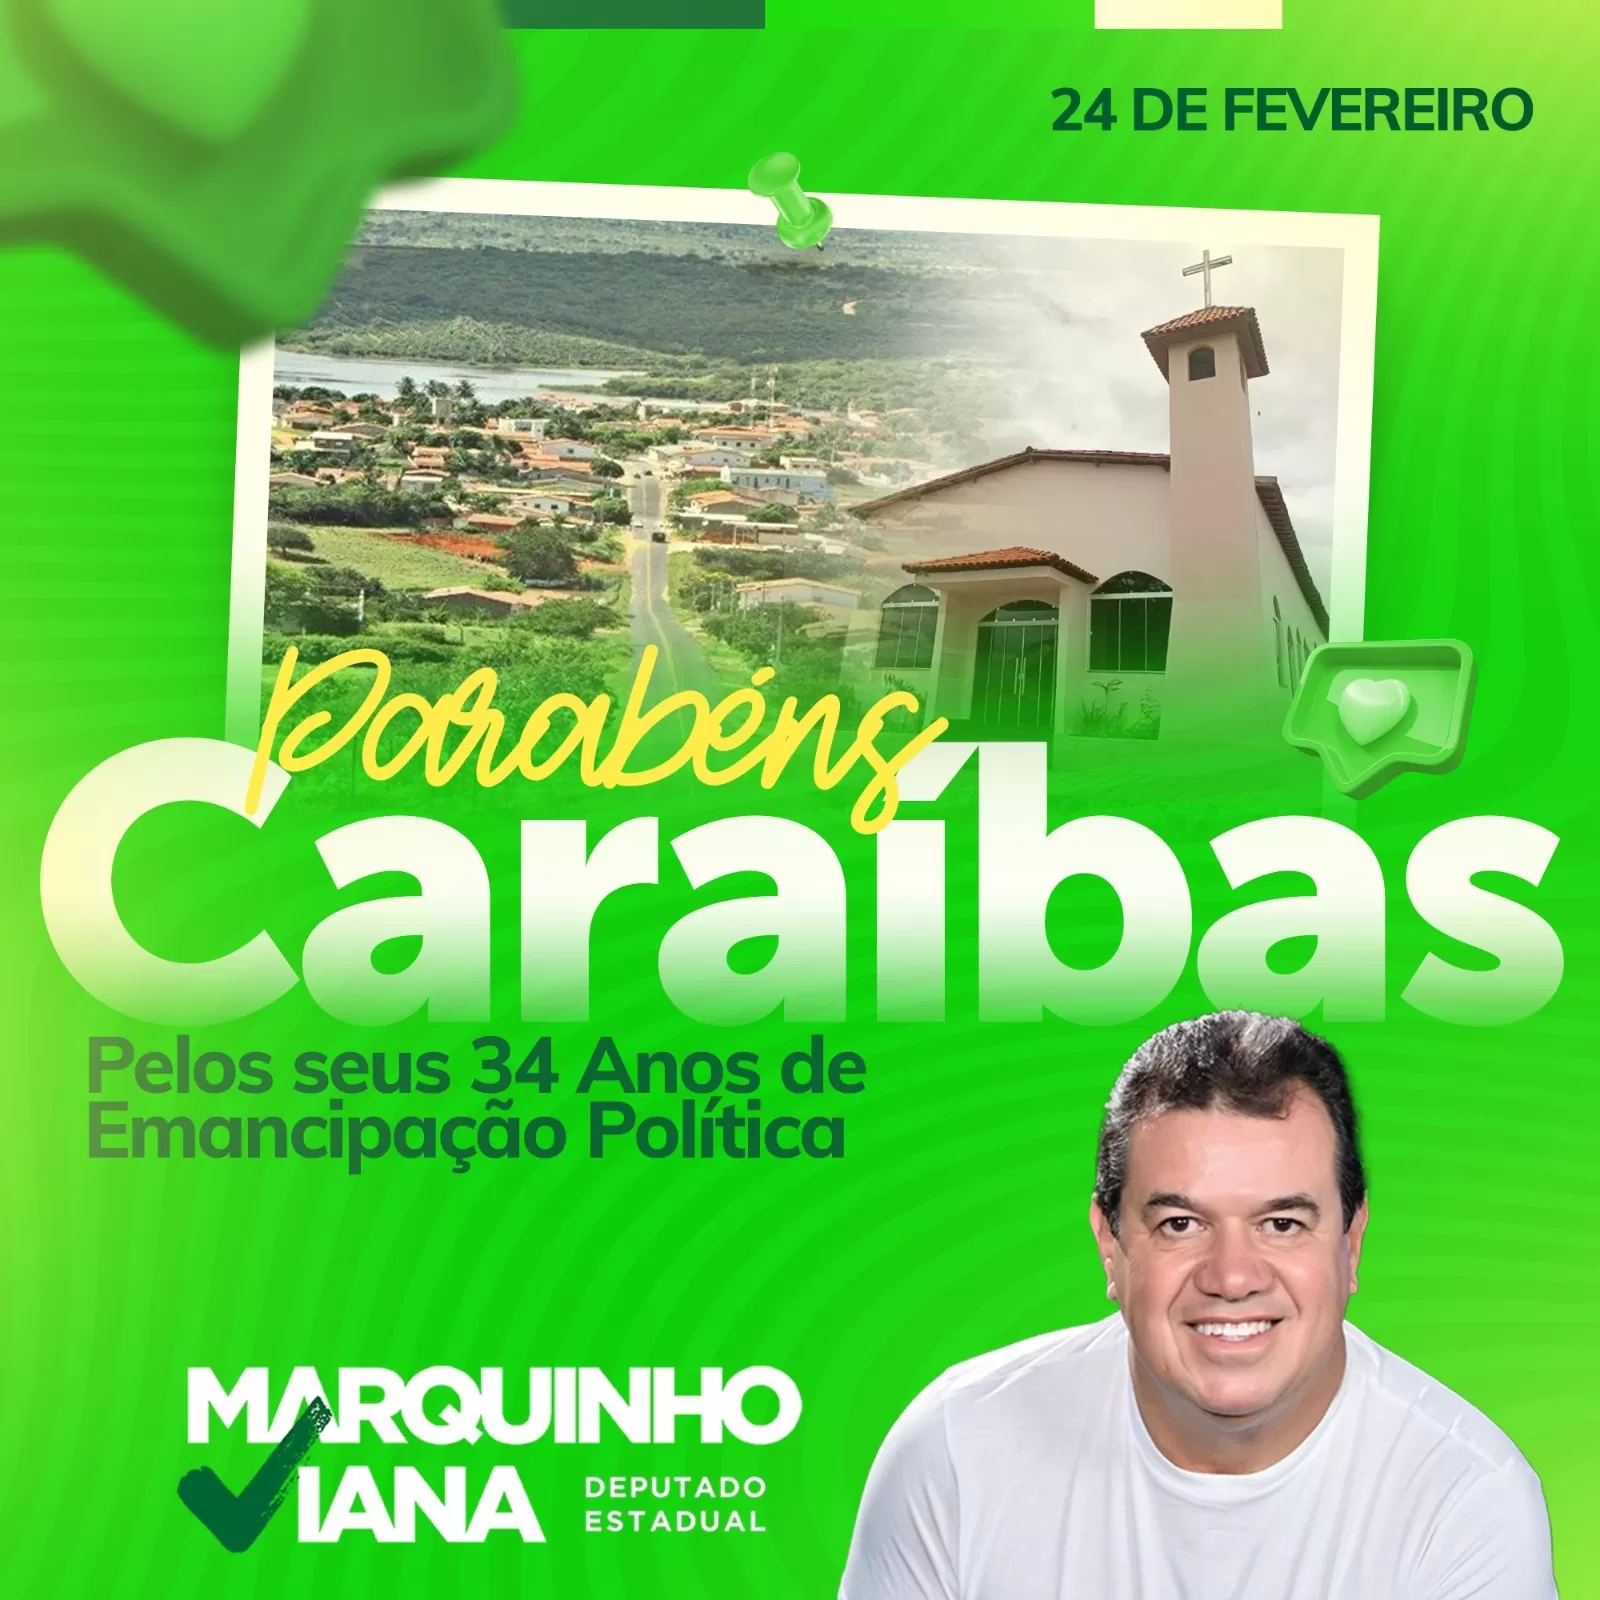 Caraíbas completa 34 anos de emancipação política e recebe parabéns do deputado Marquinho Viana